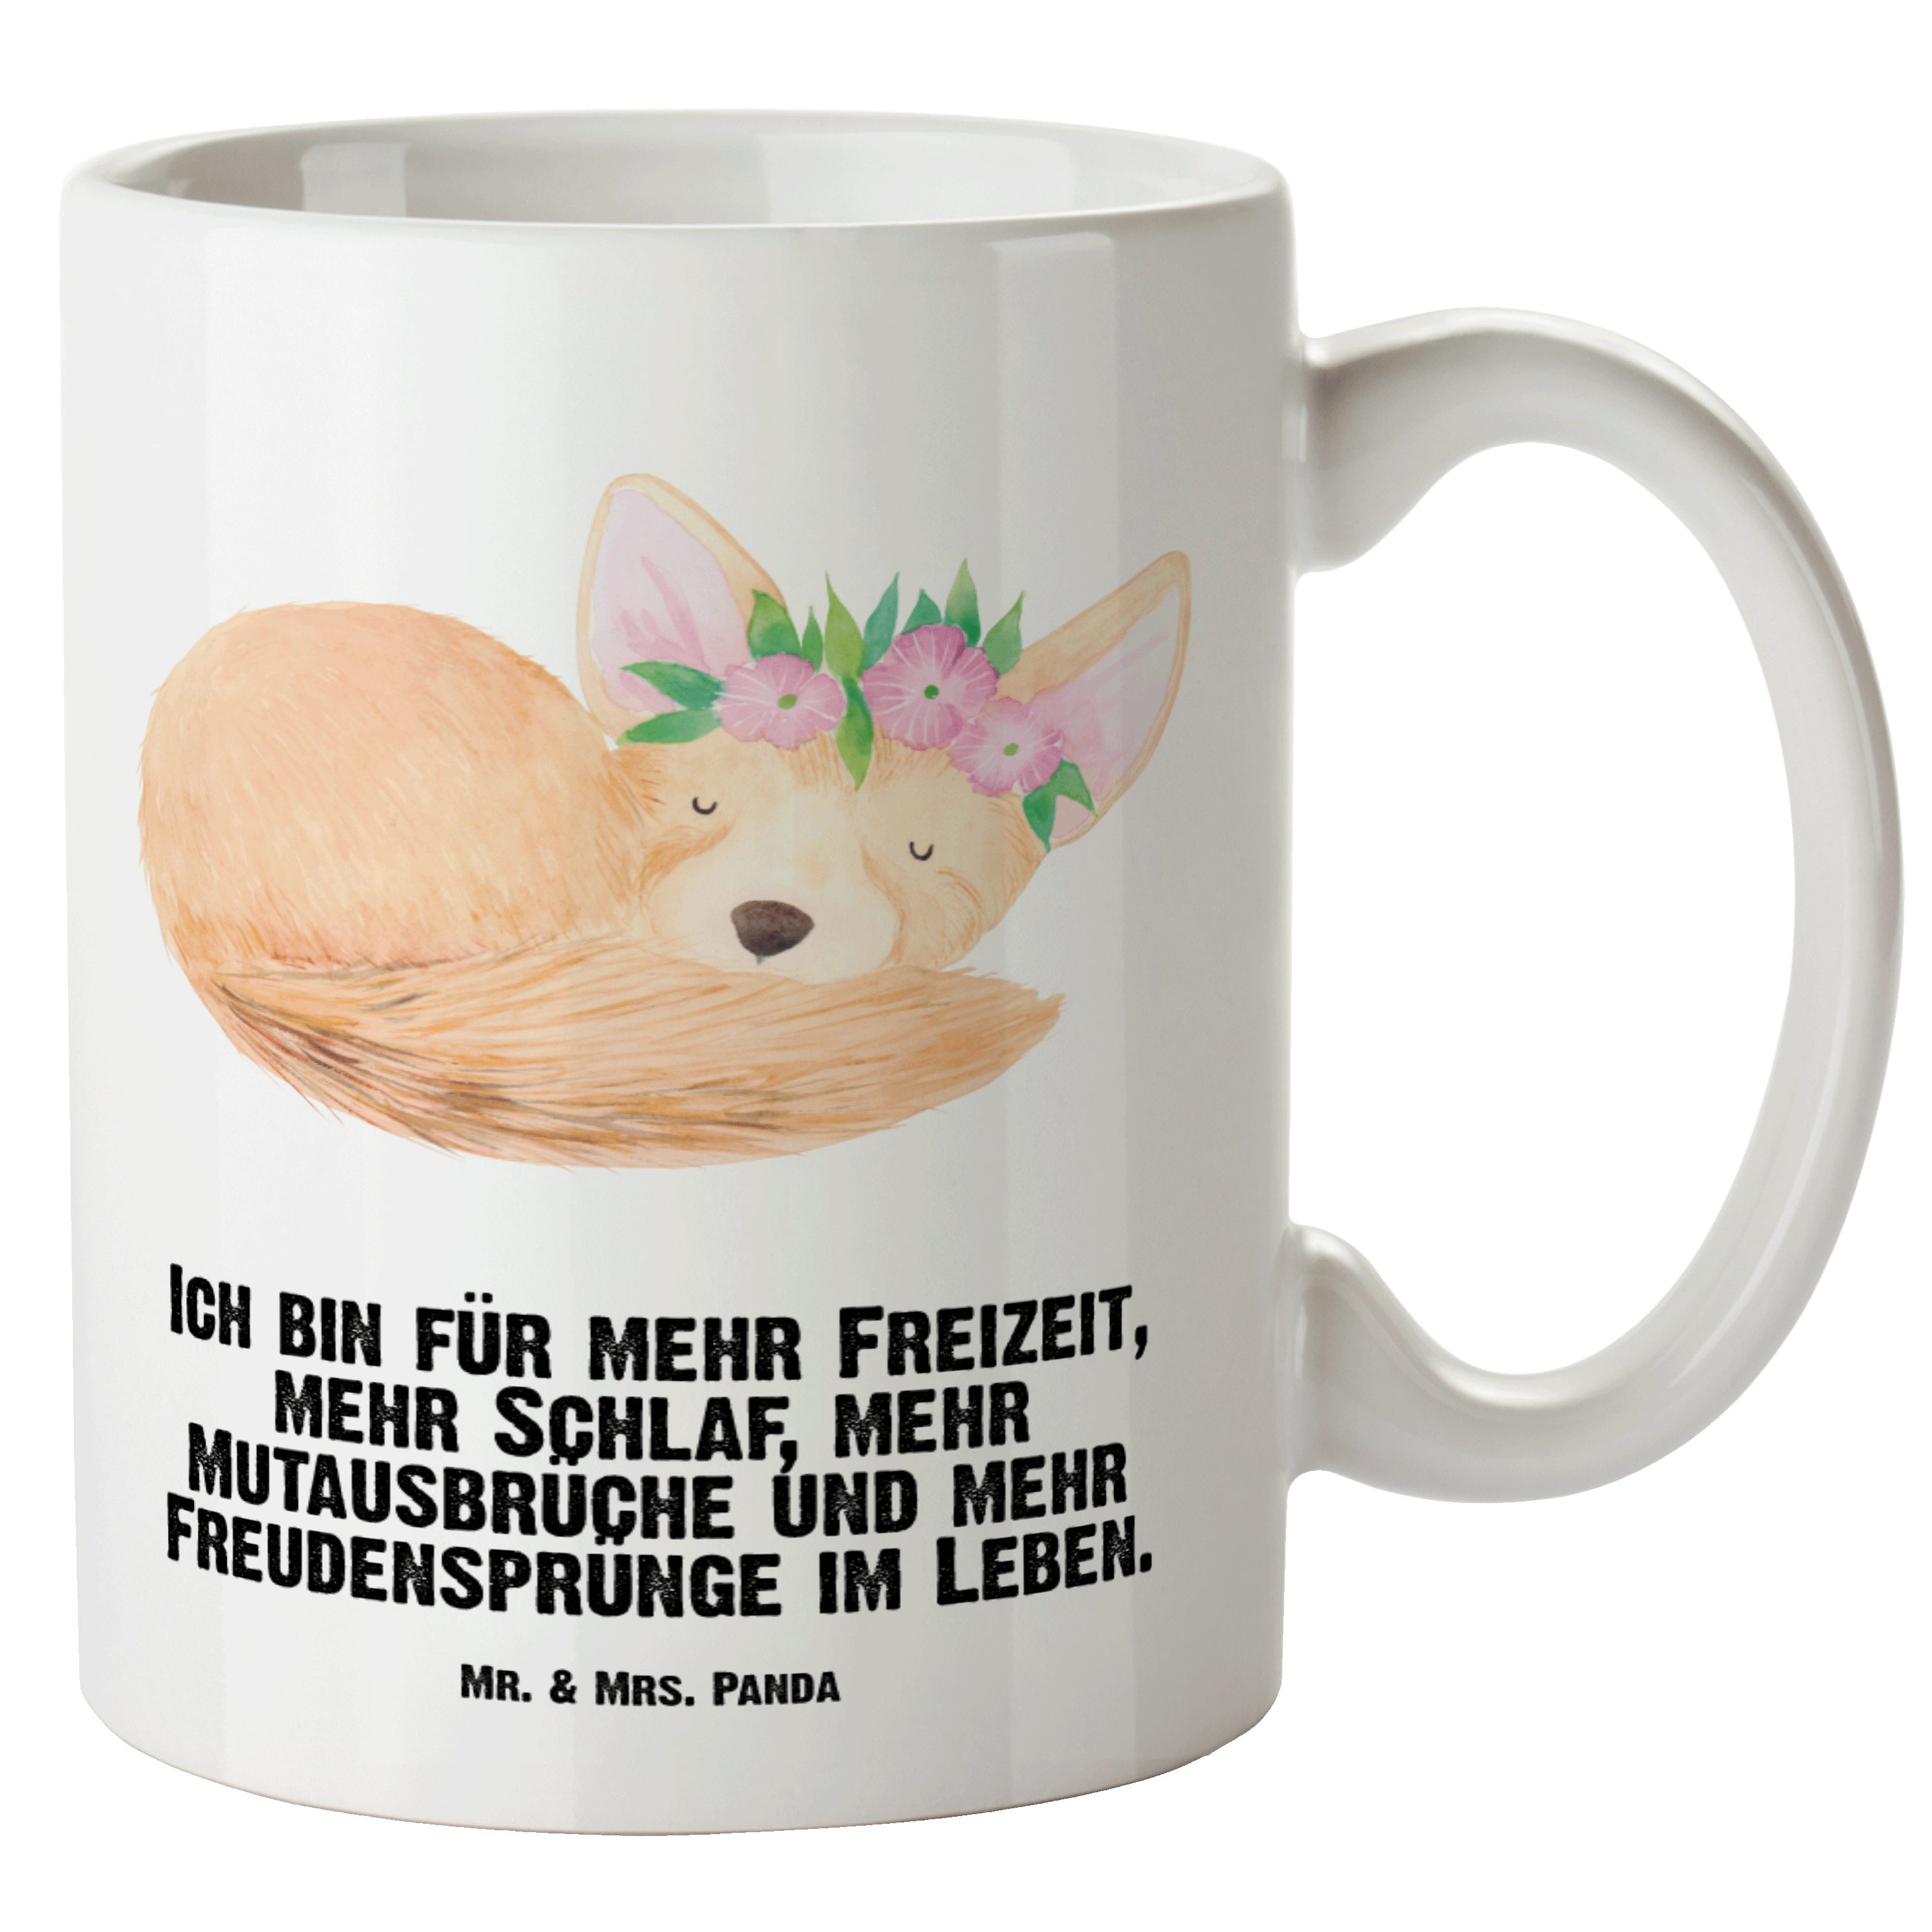 Mr. & Mrs. Panda Tasse Wüstenfuchs Blumenkranz - Weiß - Geschenk, Grosse Kaffeetasse, Afrika, XL Tasse Keramik